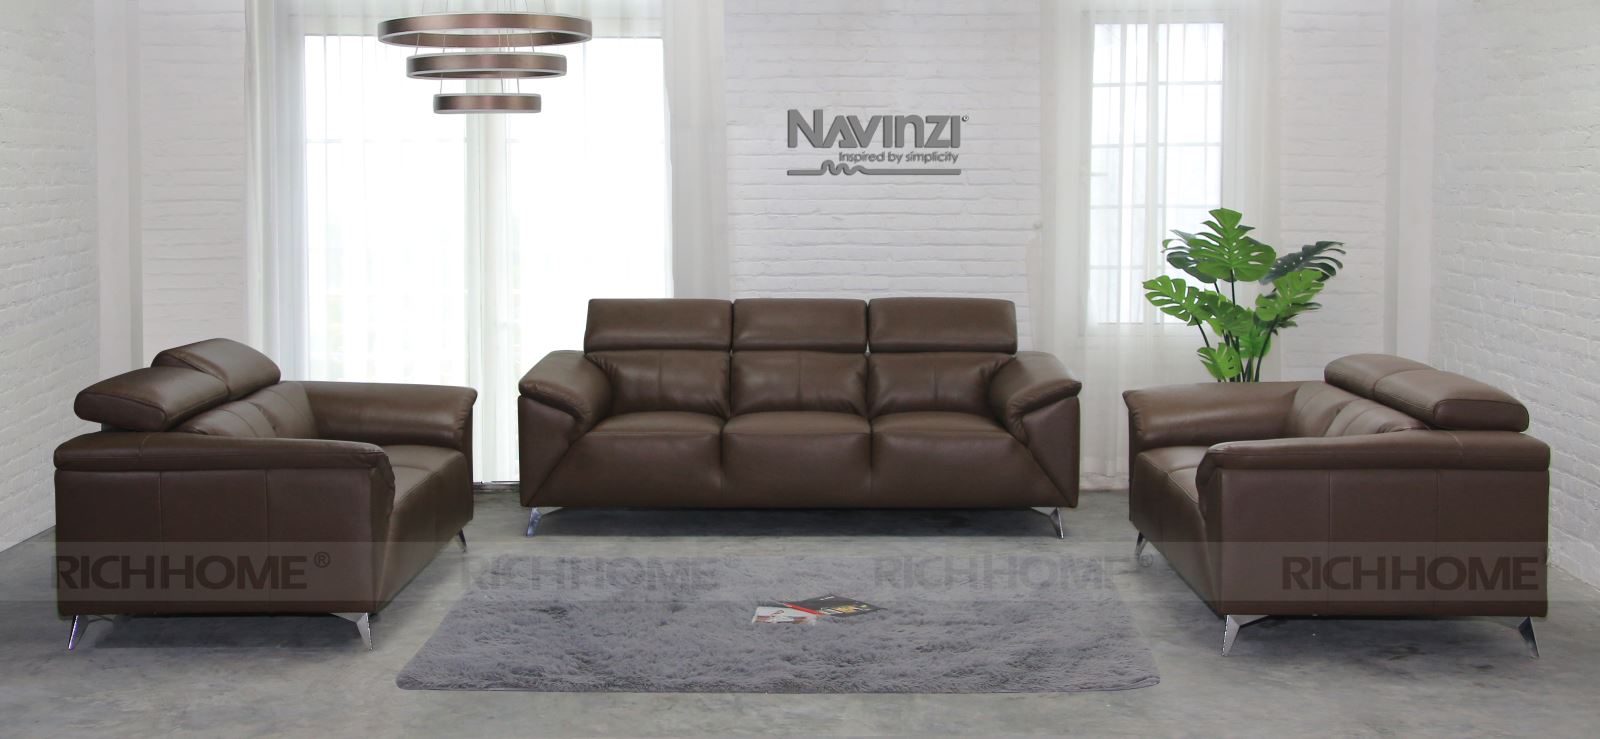 Các kiểu ghế sofa văn phòng sẽ được yêu thích nhất 2020 - Ảnh 3